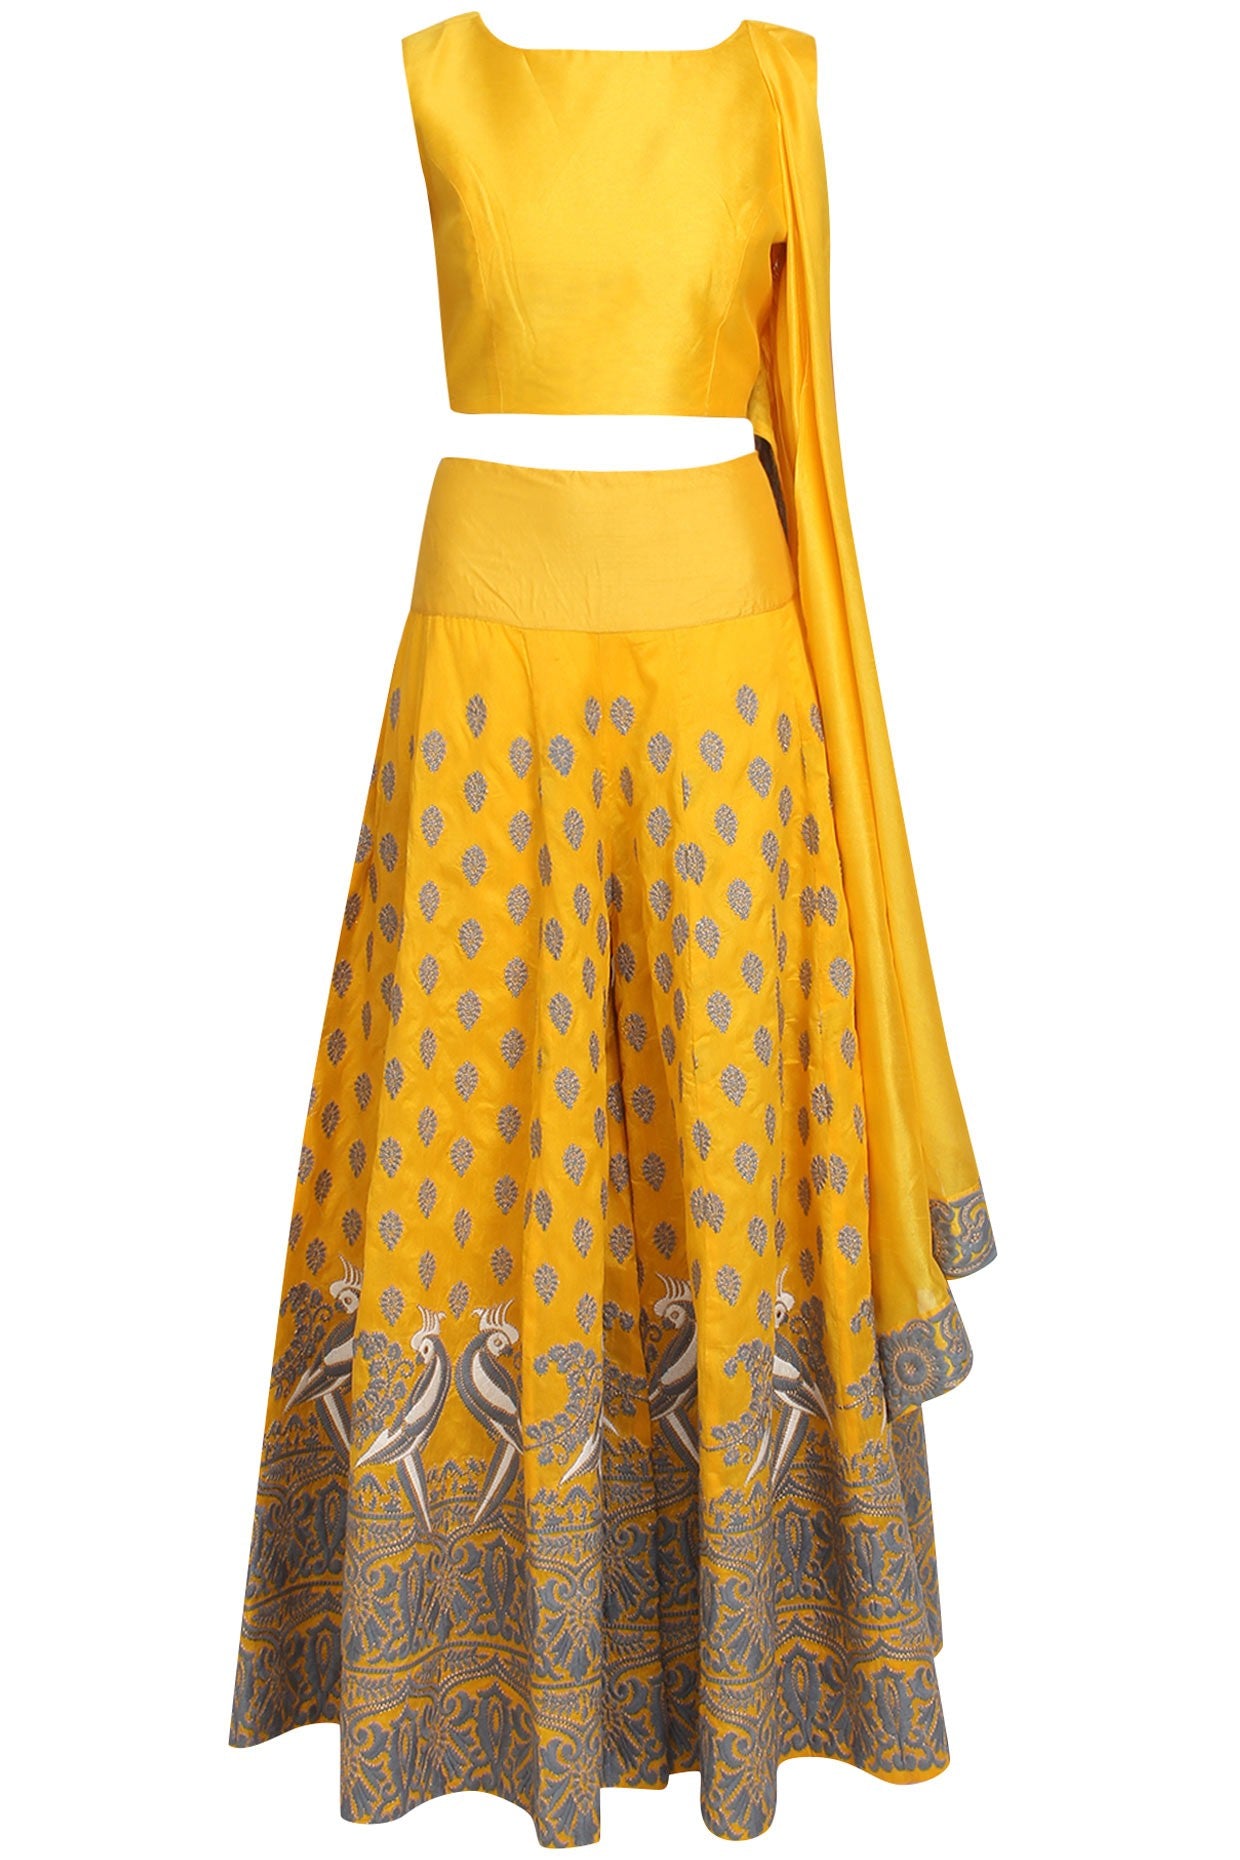 sharara dress with crop top